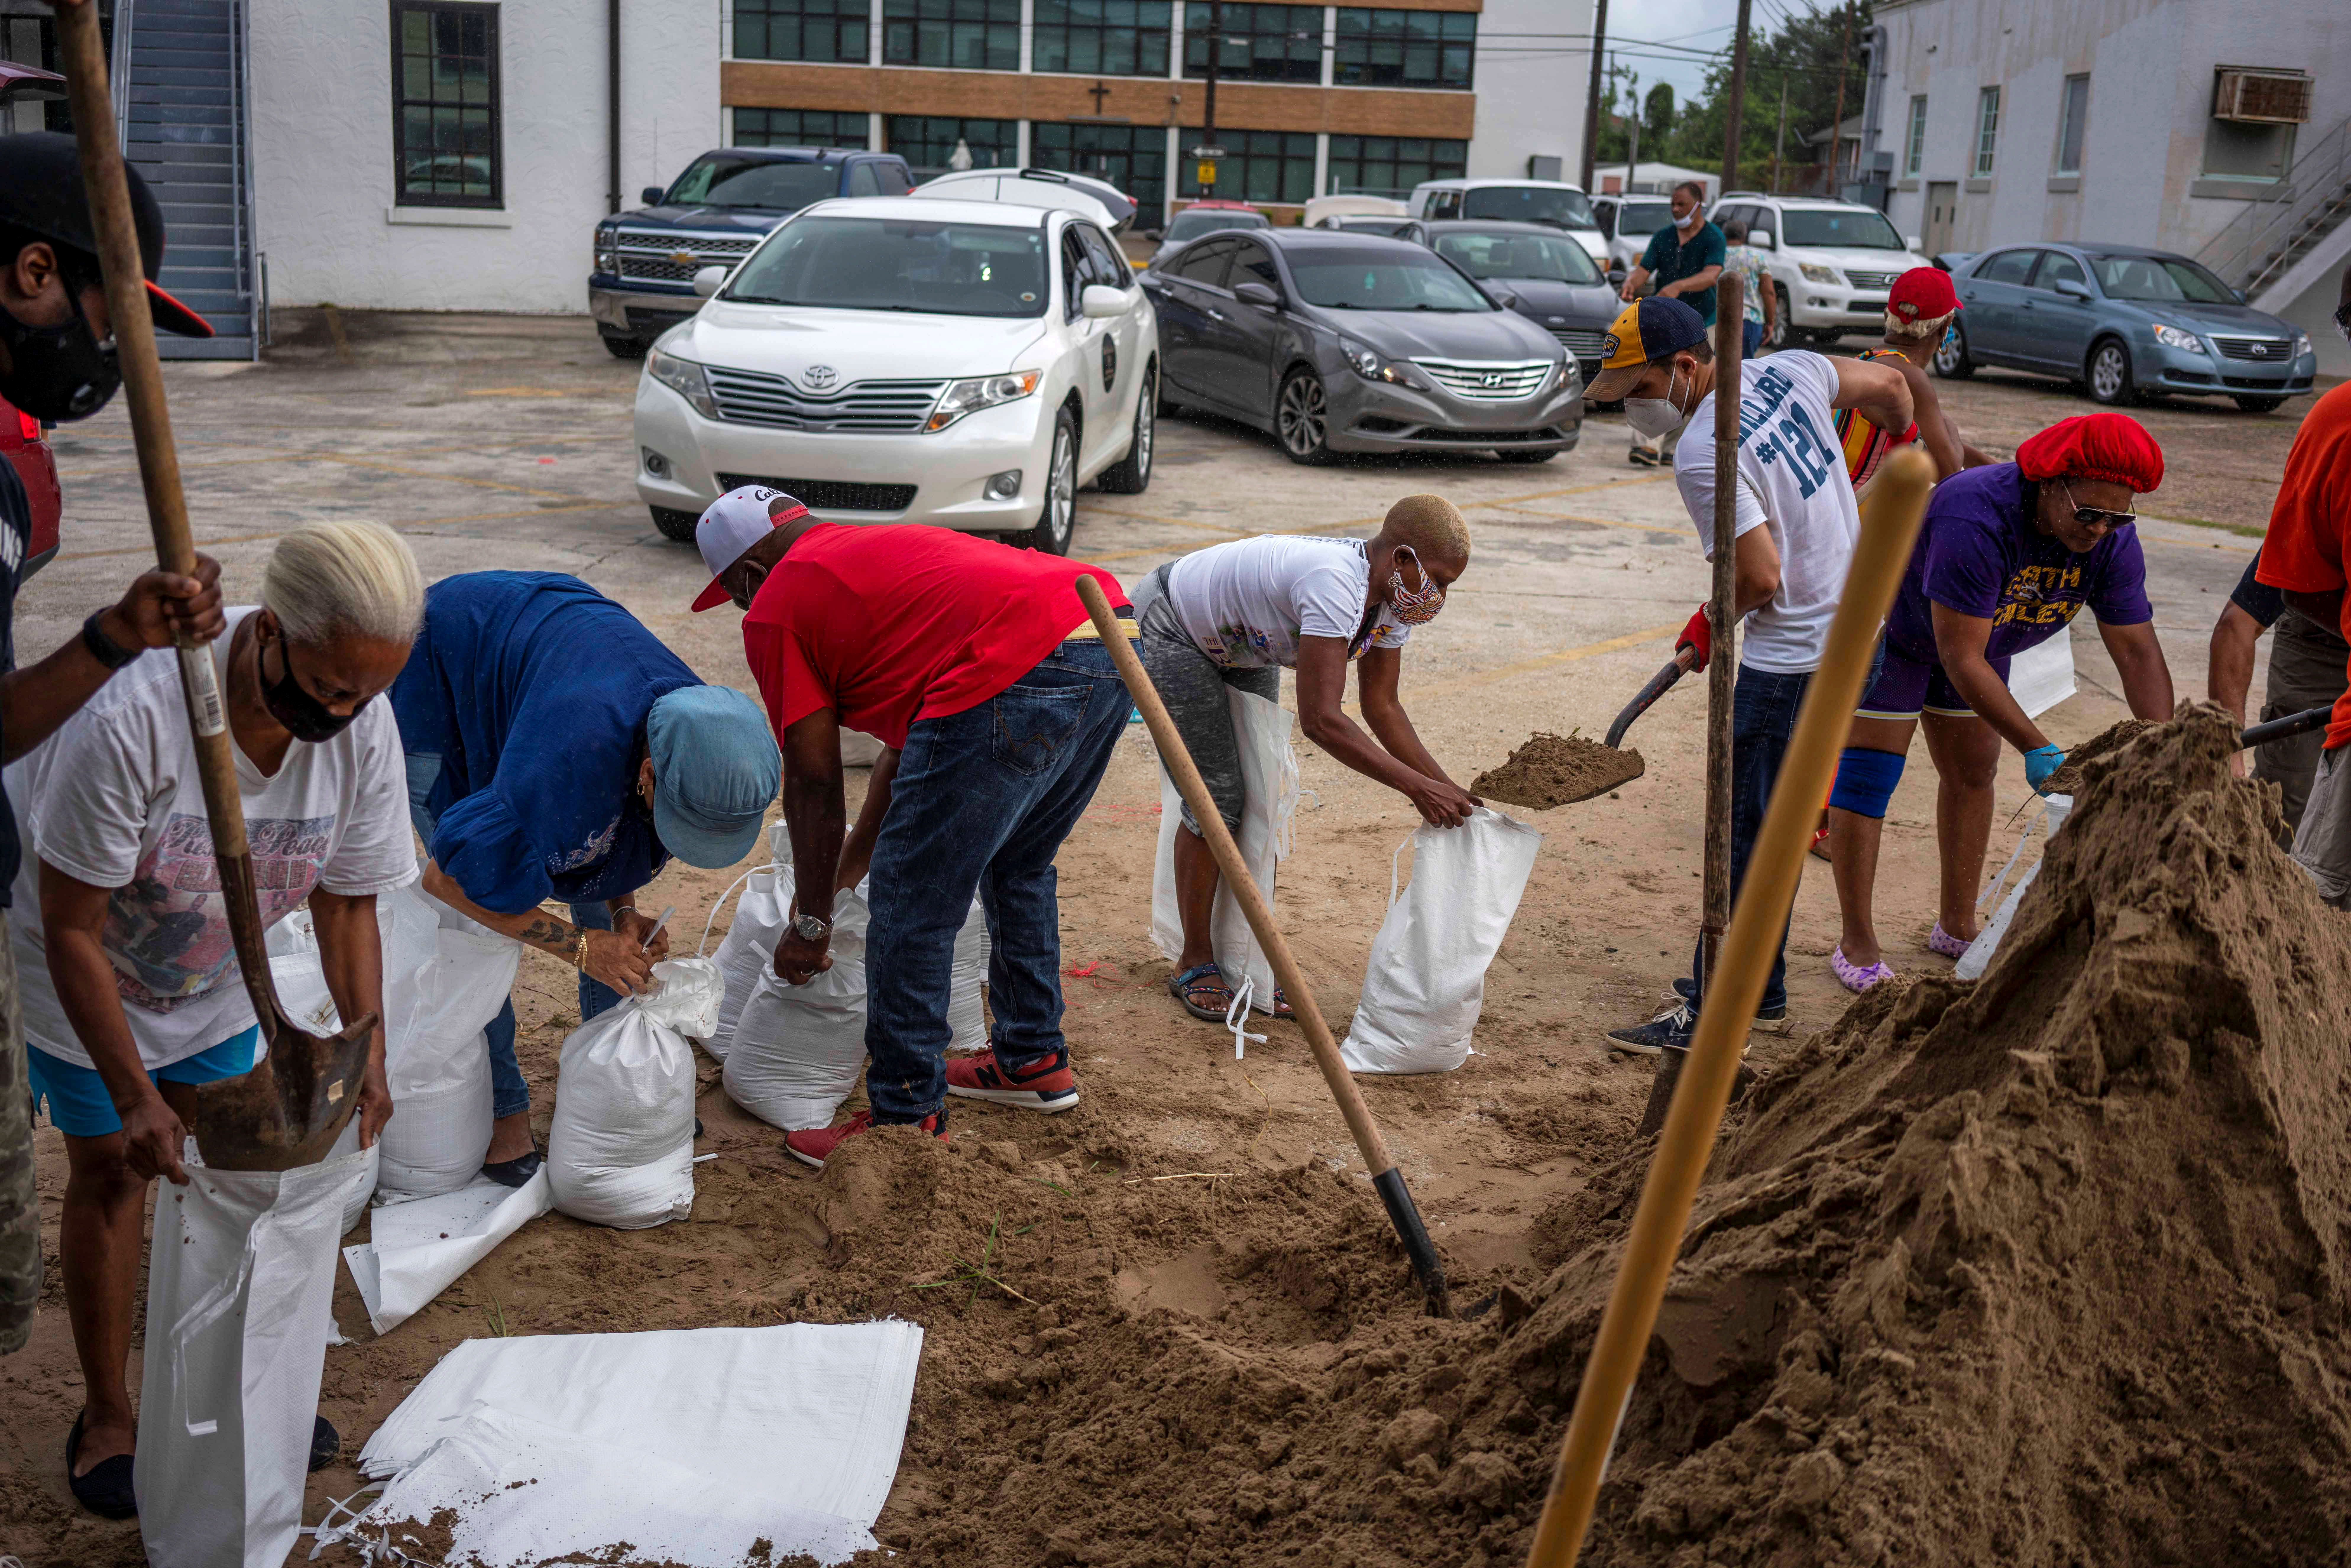 Residentes de New Orleans trabajan en equipo para armar sacos de arena contra las inundaciones (REUTERS/Kathleen Flynn)